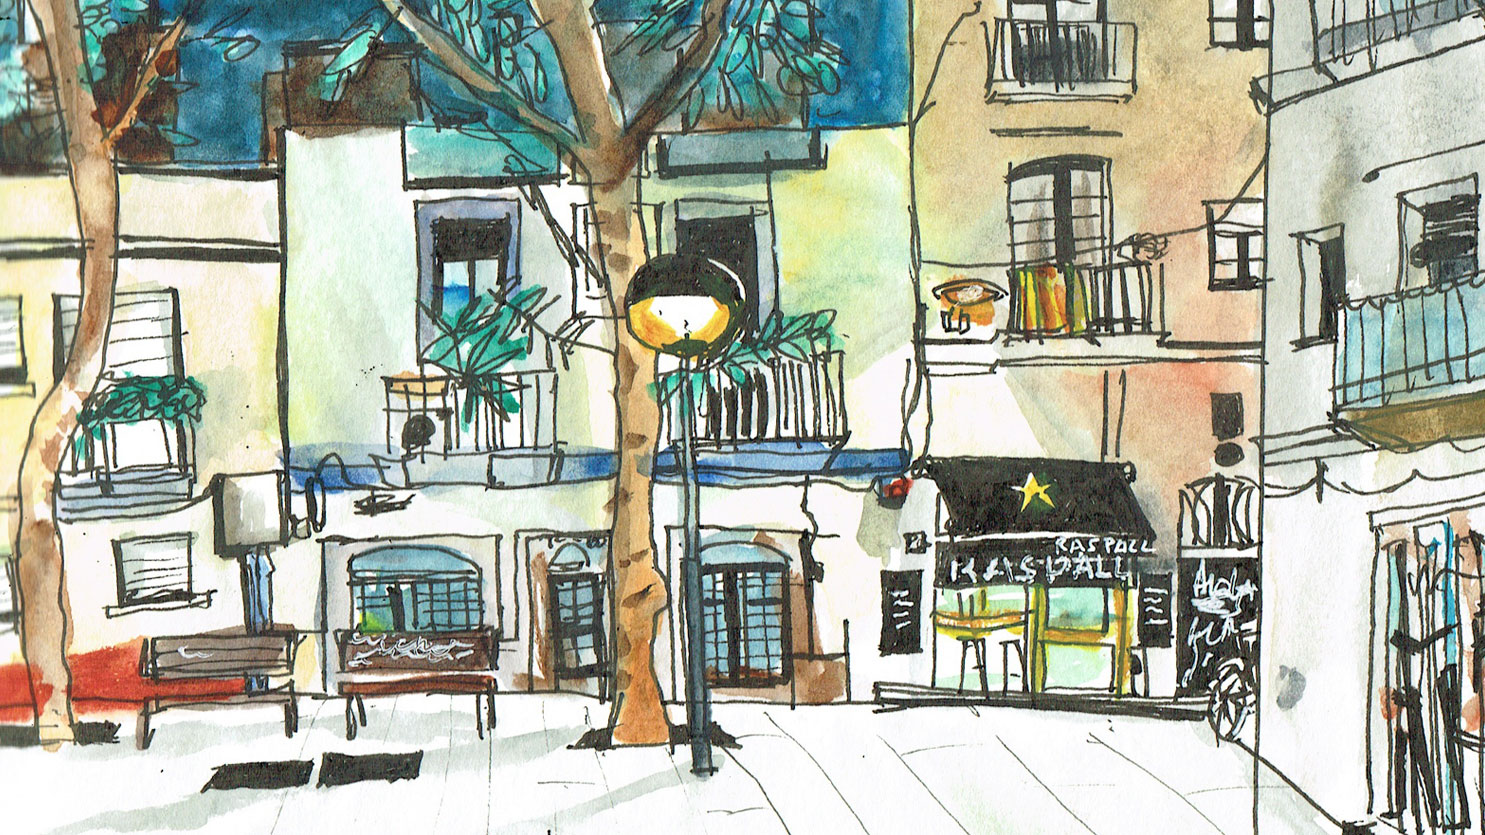 La plaça del Raspall sketch – Gràcia, Barcelona – in rotring and watercolors